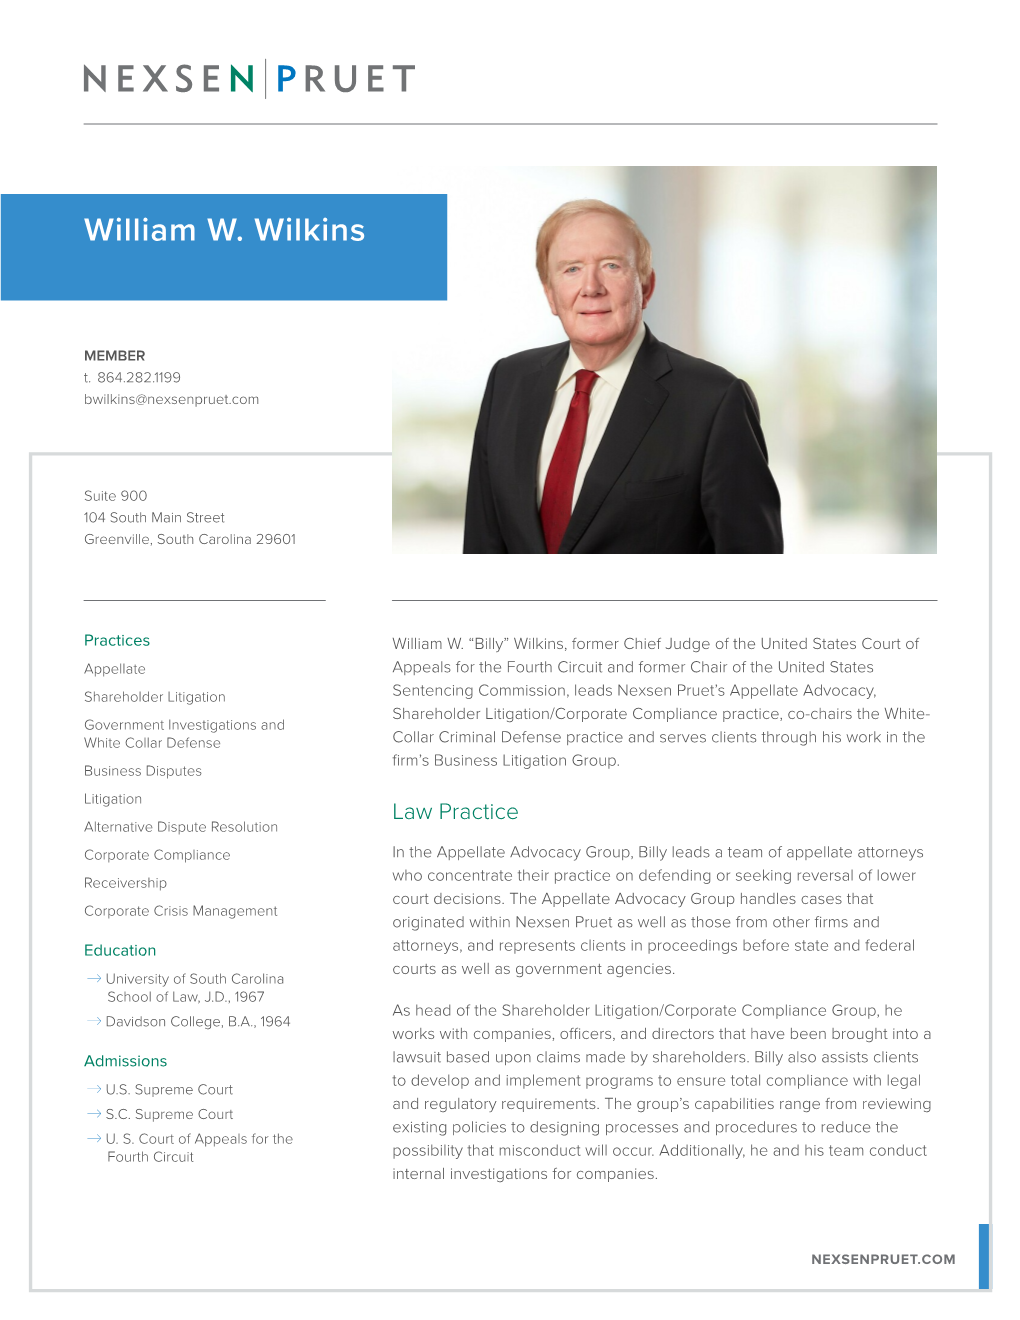 William W. Wilkins